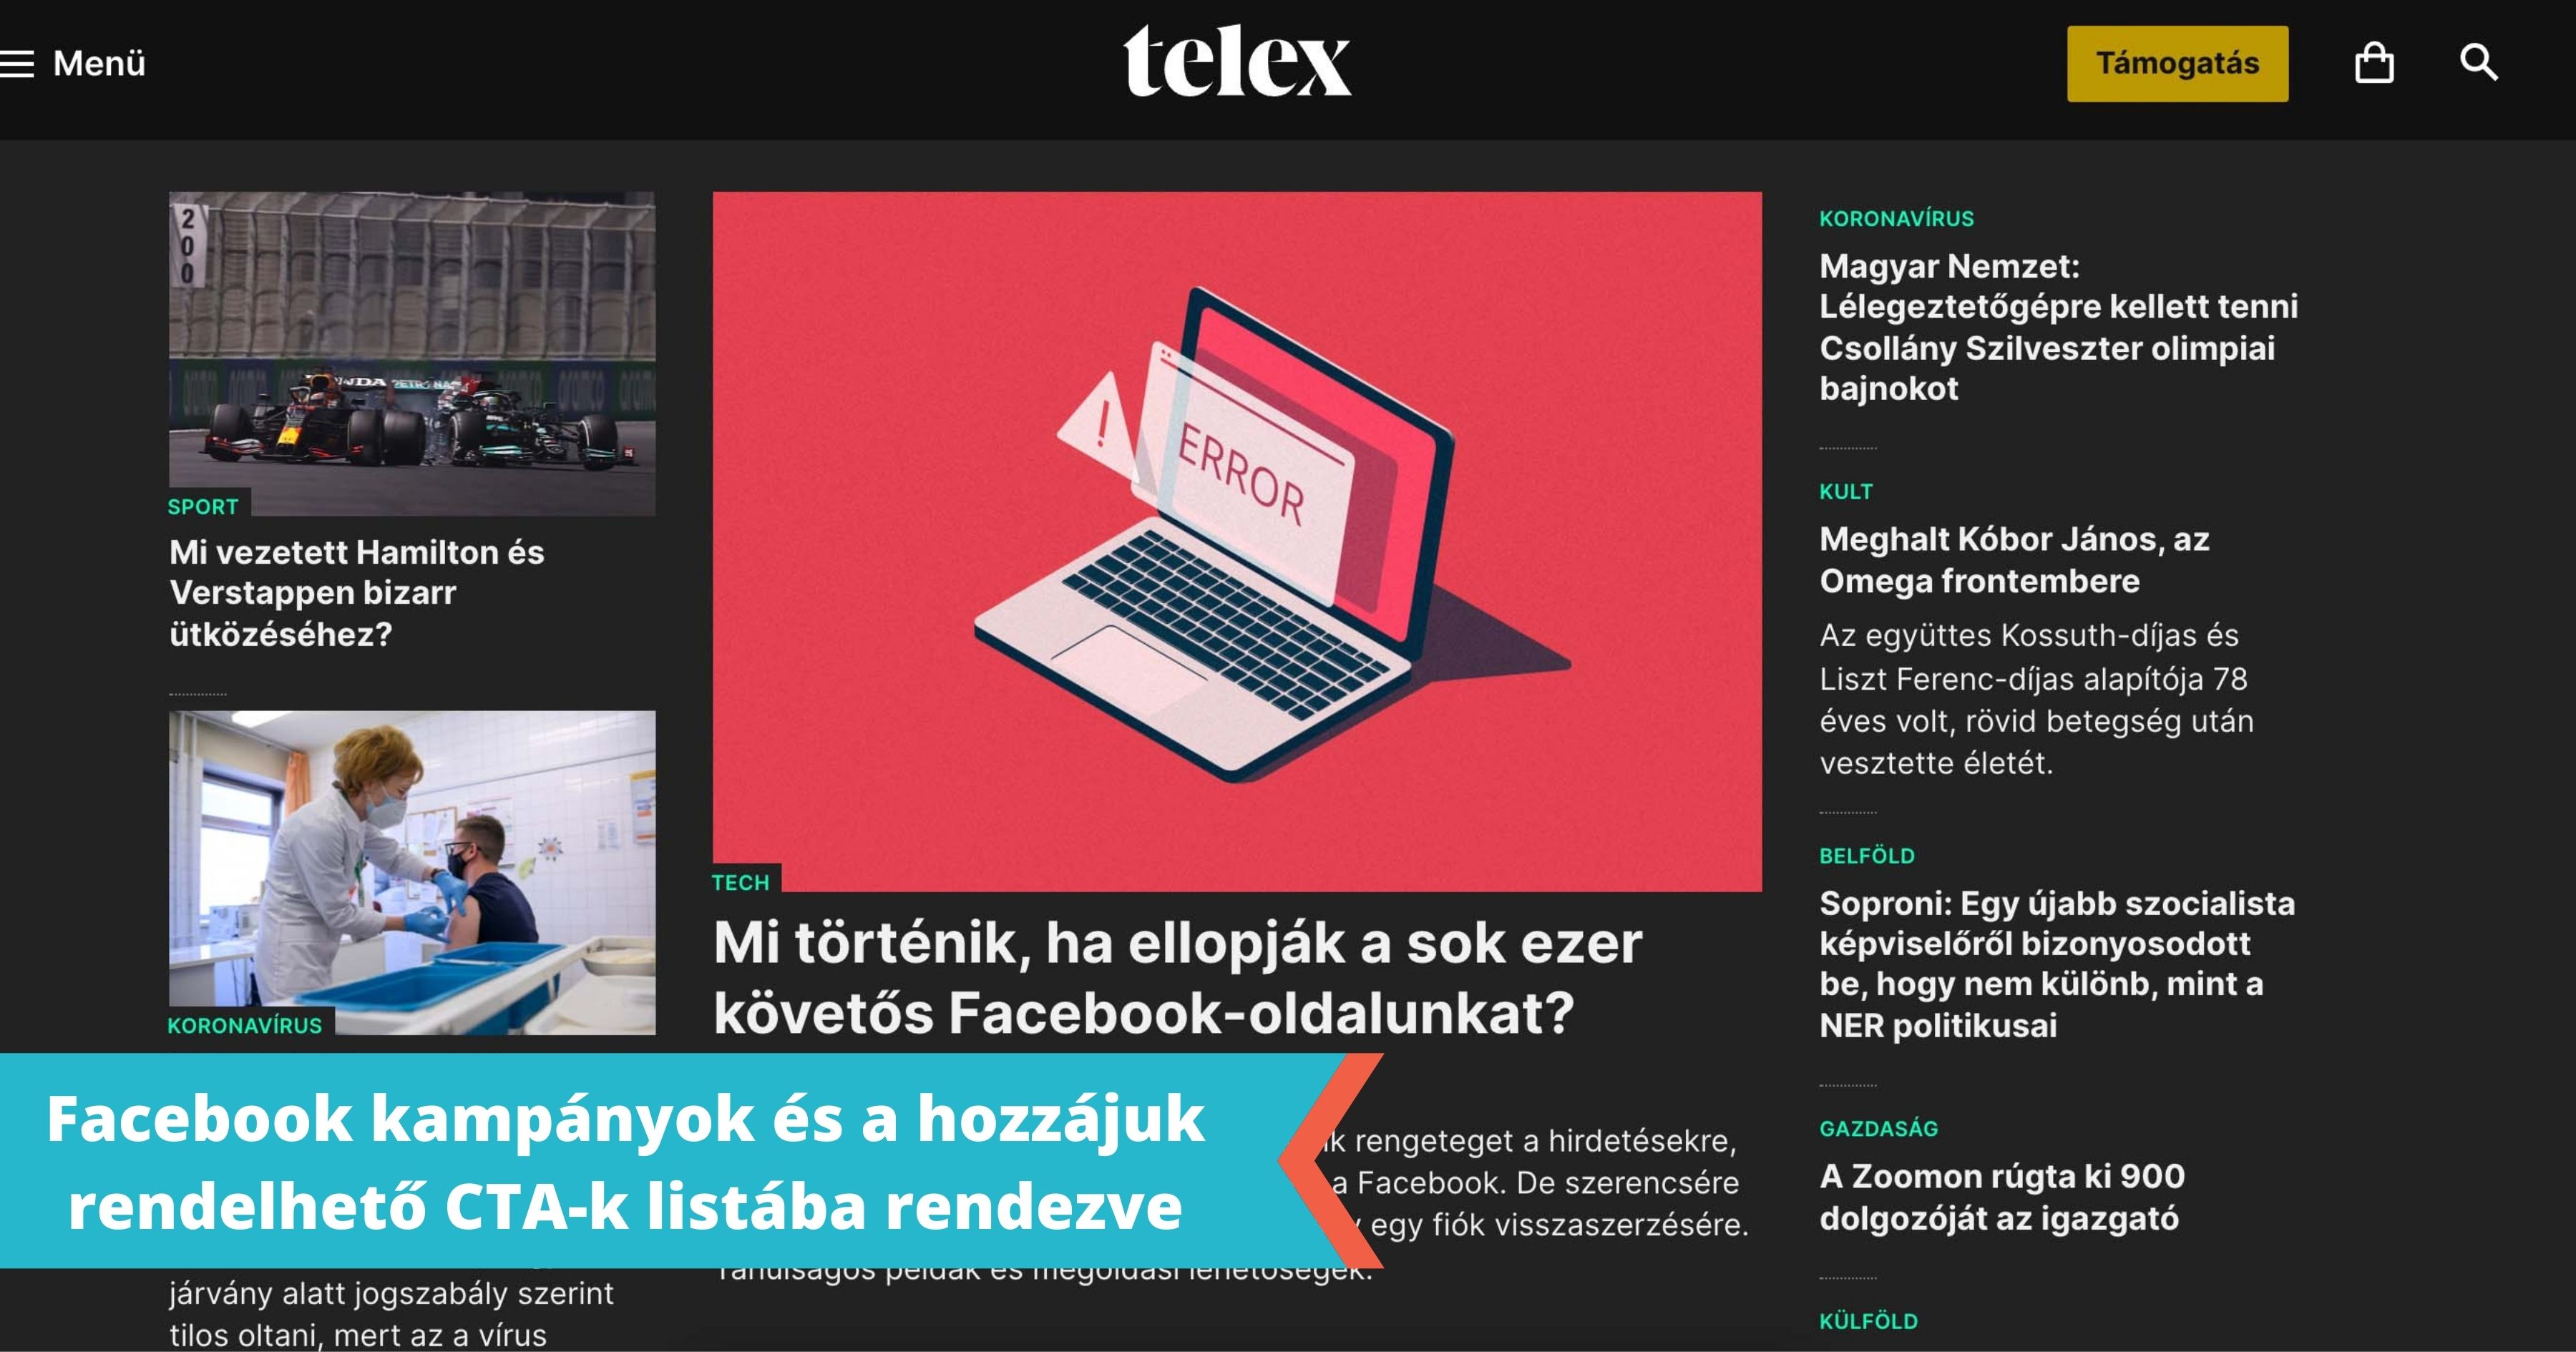 telex.hu SocialWings interjú: A telex.hu az ellopott Facebook oldalakkal kapcsolatban kérdezte meg Steindl Mátét a SocialWings alapítóját.